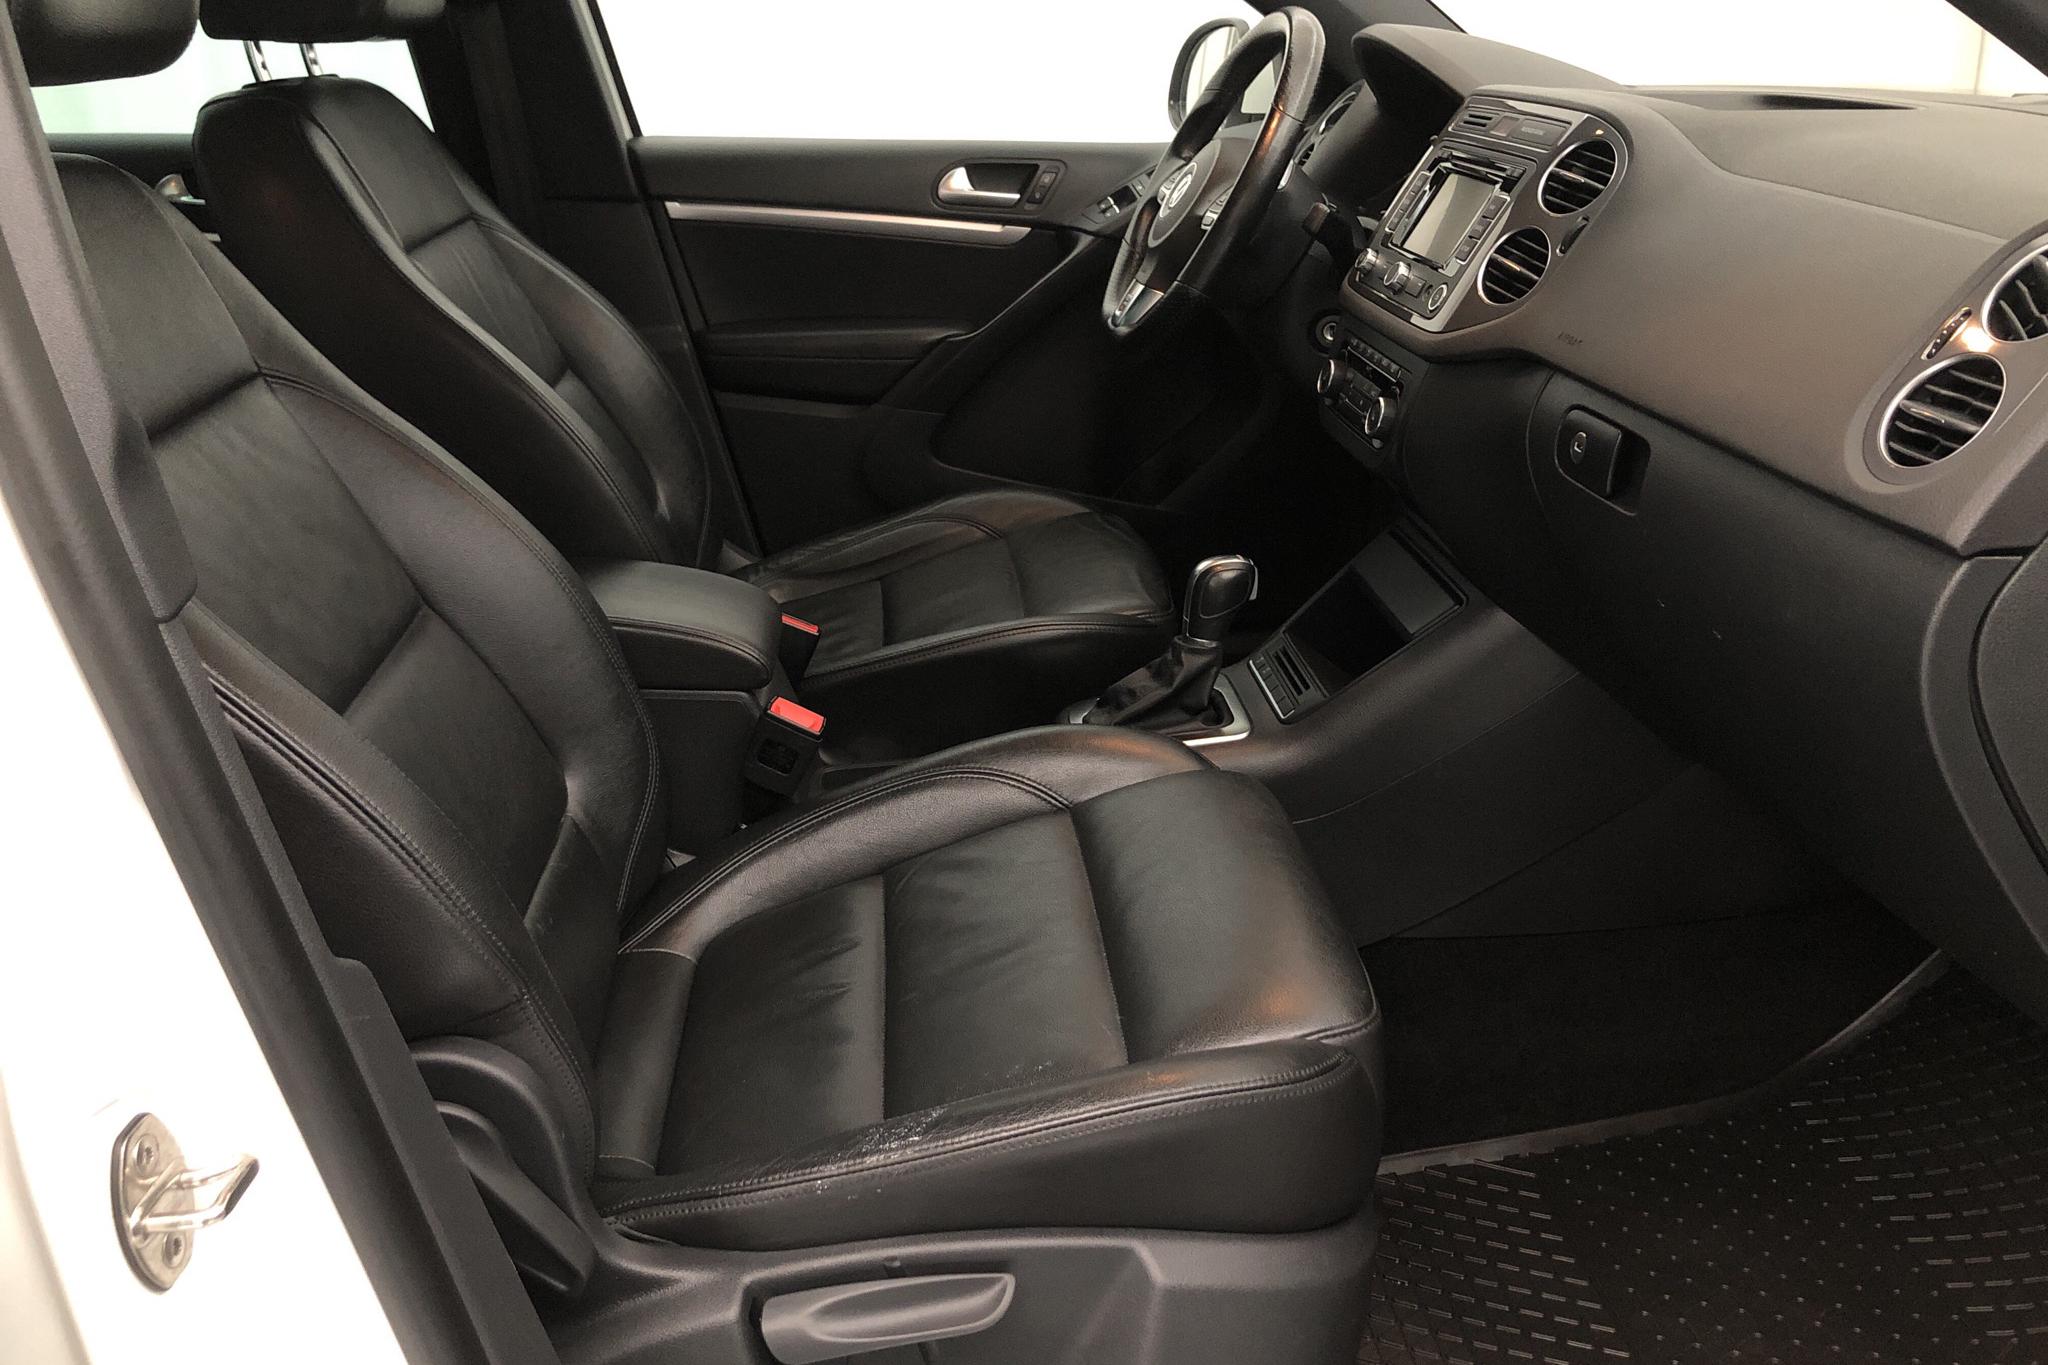 VW Tiguan 2.0 TDI 4MOTION BlueMotion Technology (177hk) - 91 760 km - Automatic - white - 2015